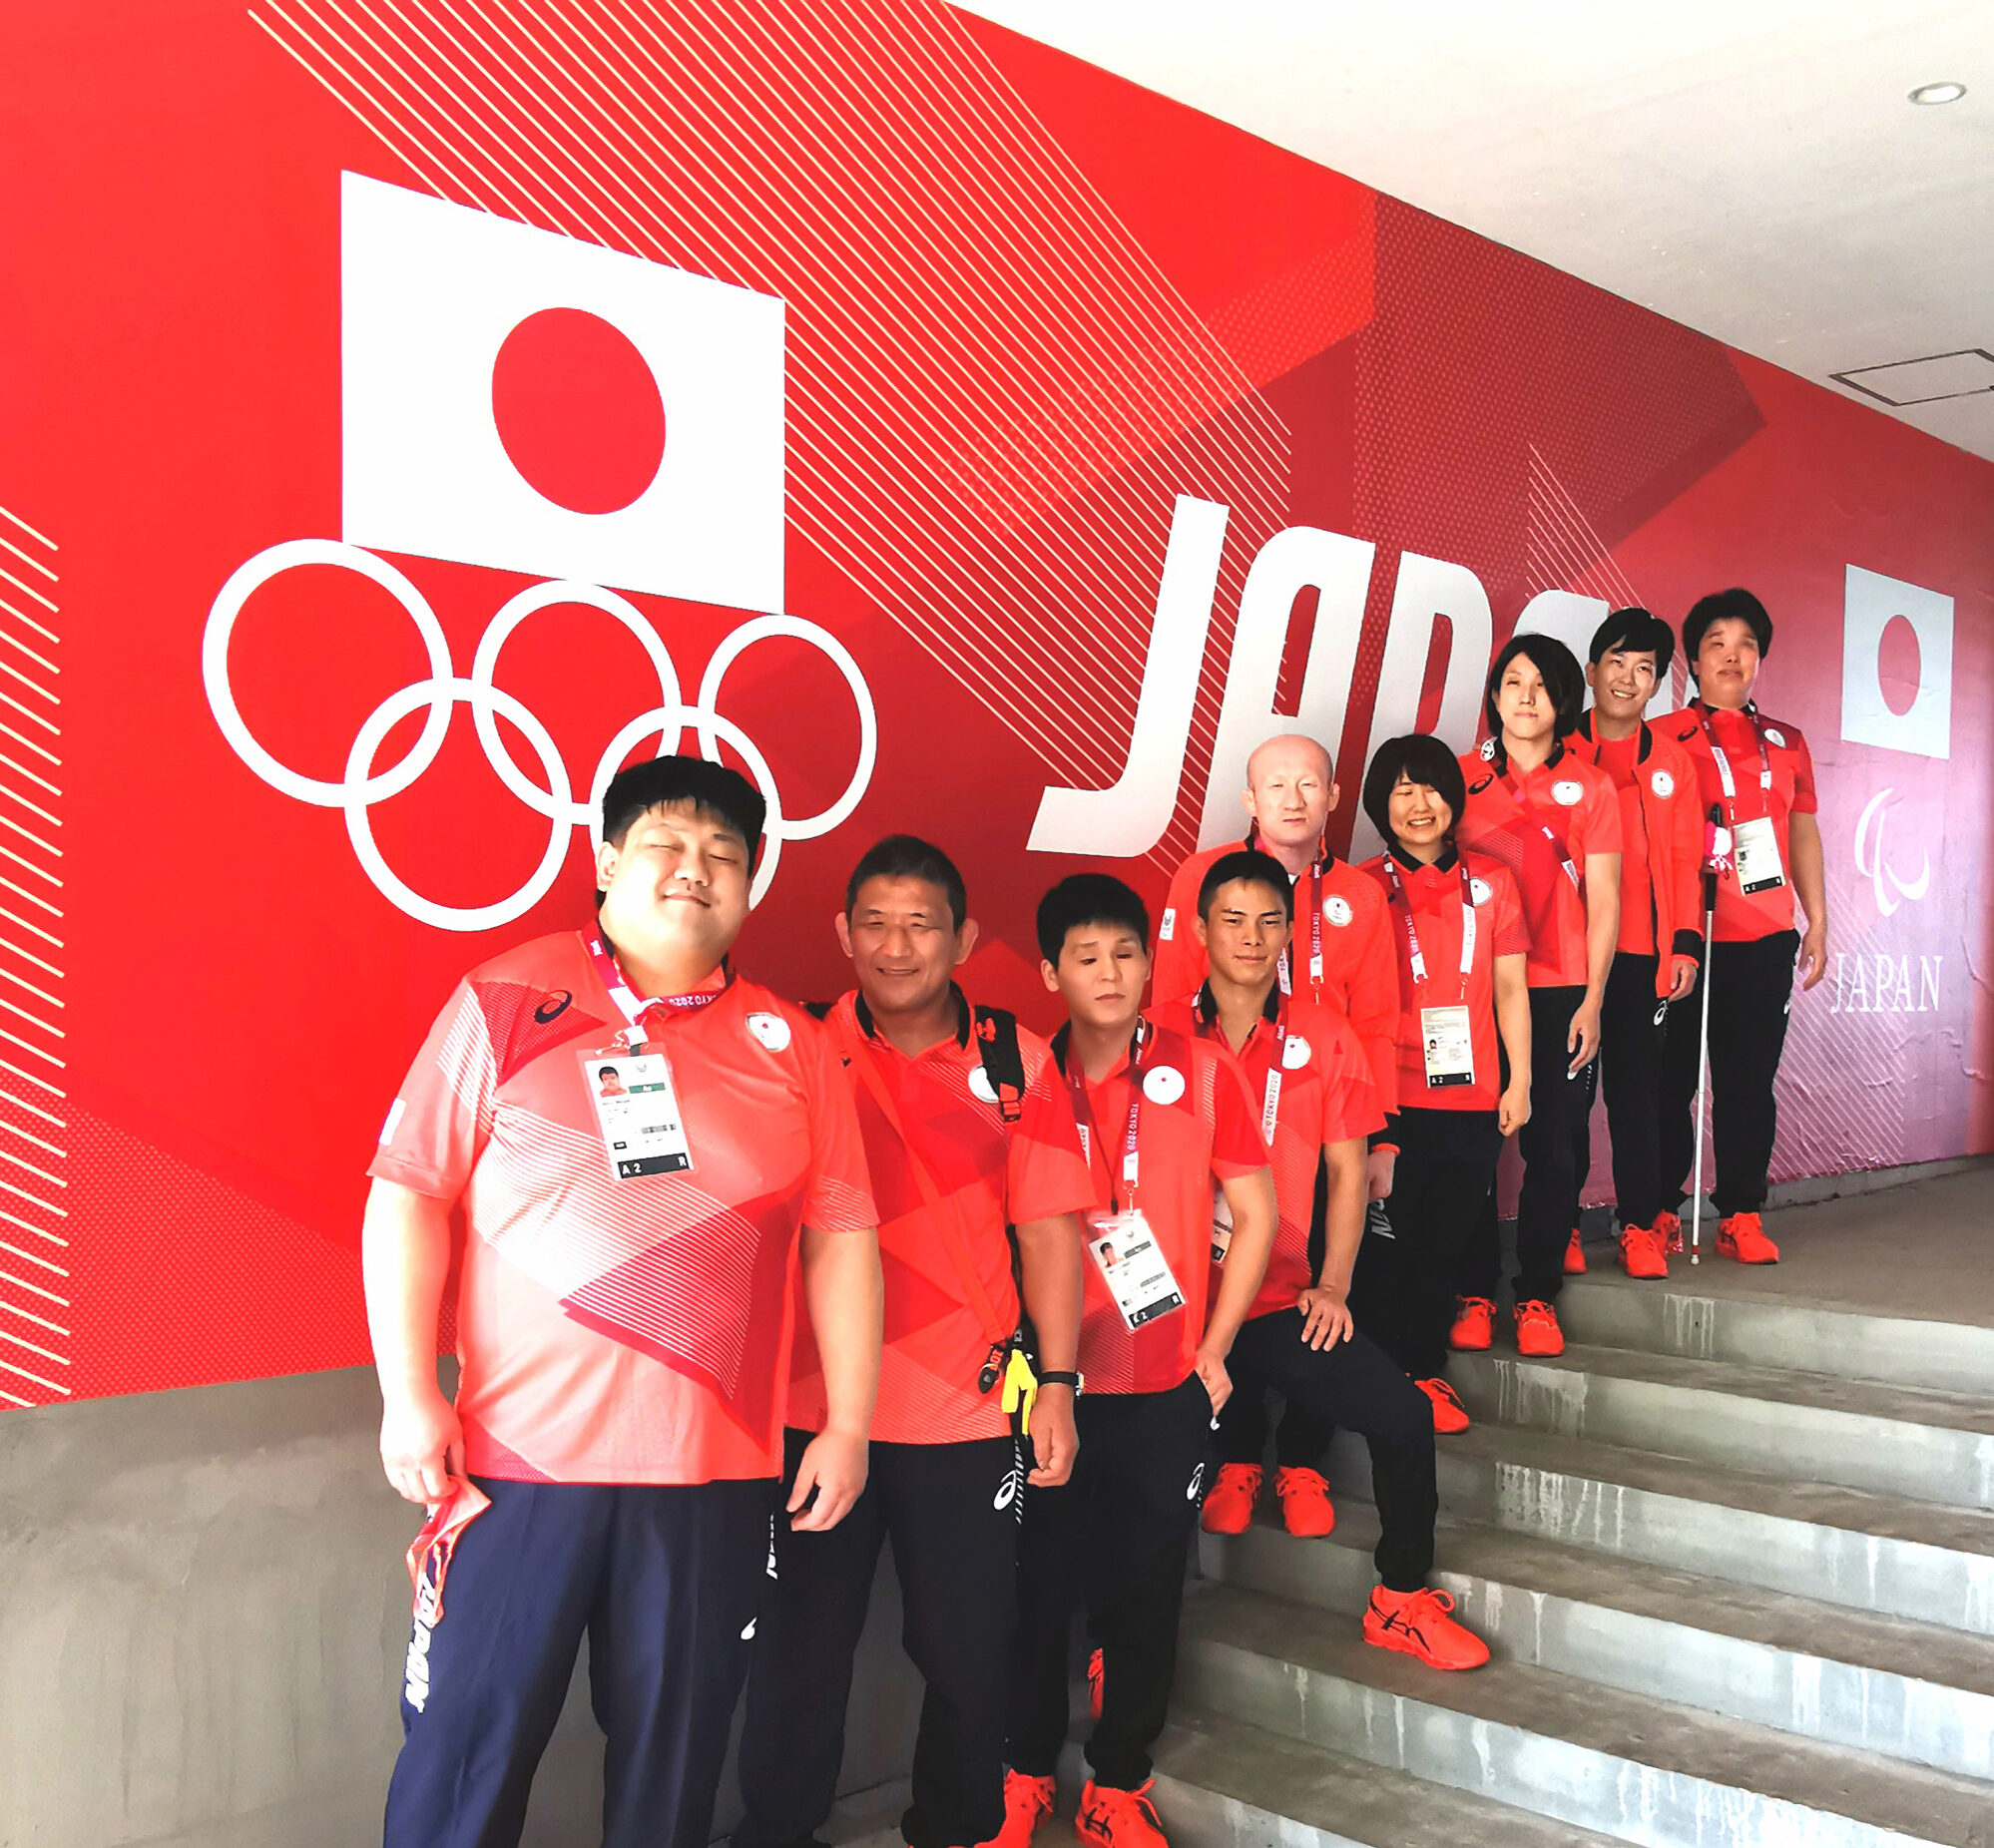 パラリンピック東京大会の日本代表選手が笑顔で並んでいる様子